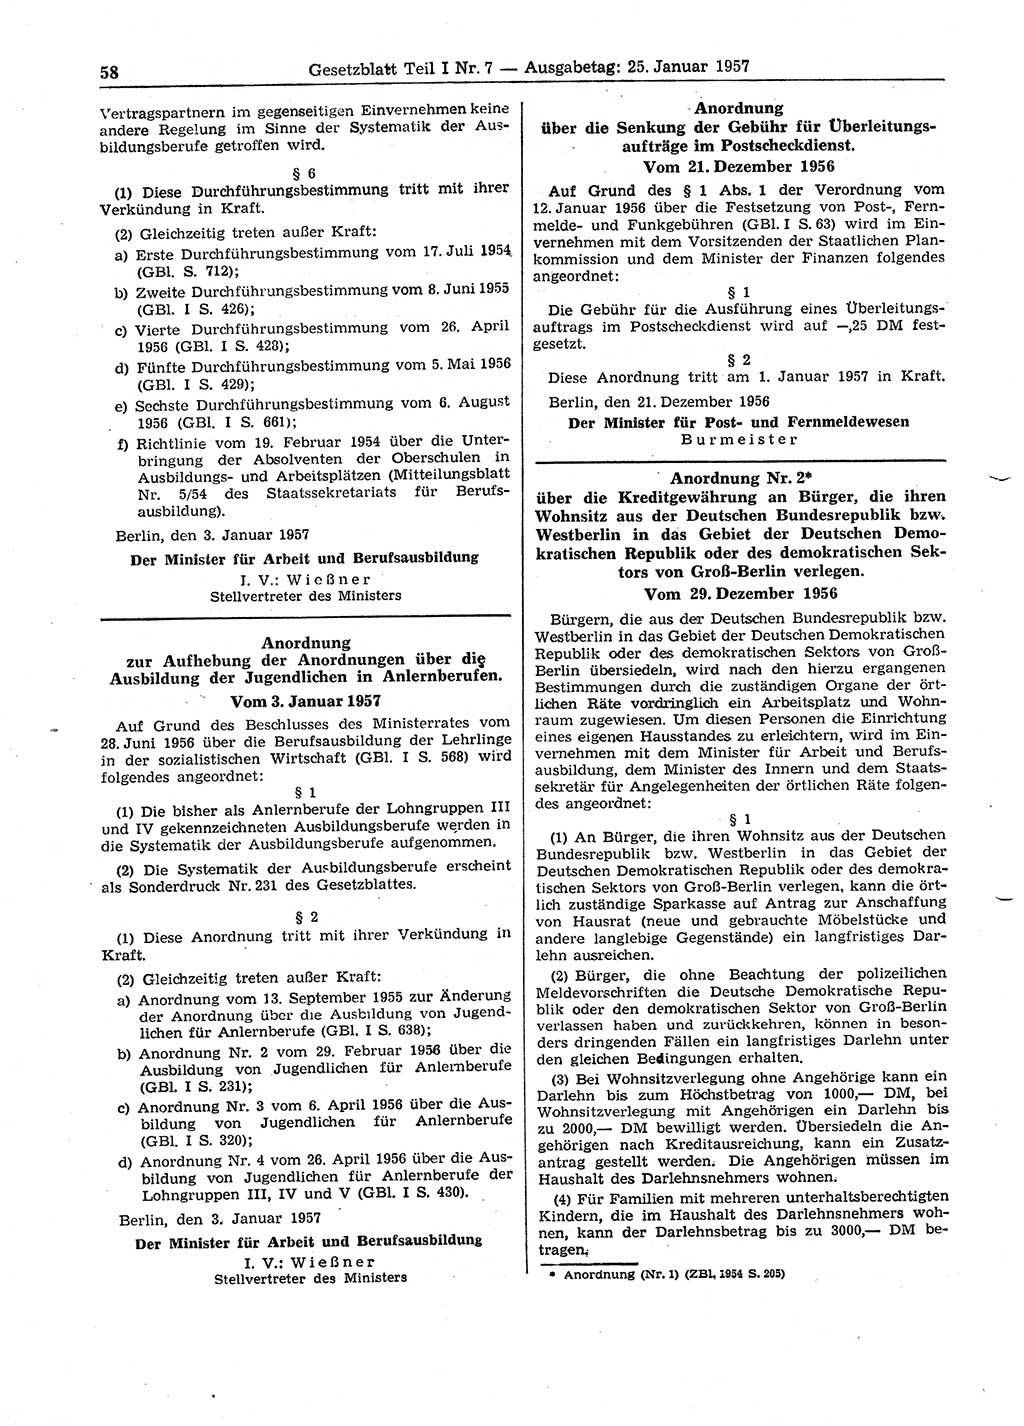 Gesetzblatt (GBl.) der Deutschen Demokratischen Republik (DDR) Teil Ⅰ 1957, Seite 58 (GBl. DDR Ⅰ 1957, S. 58)